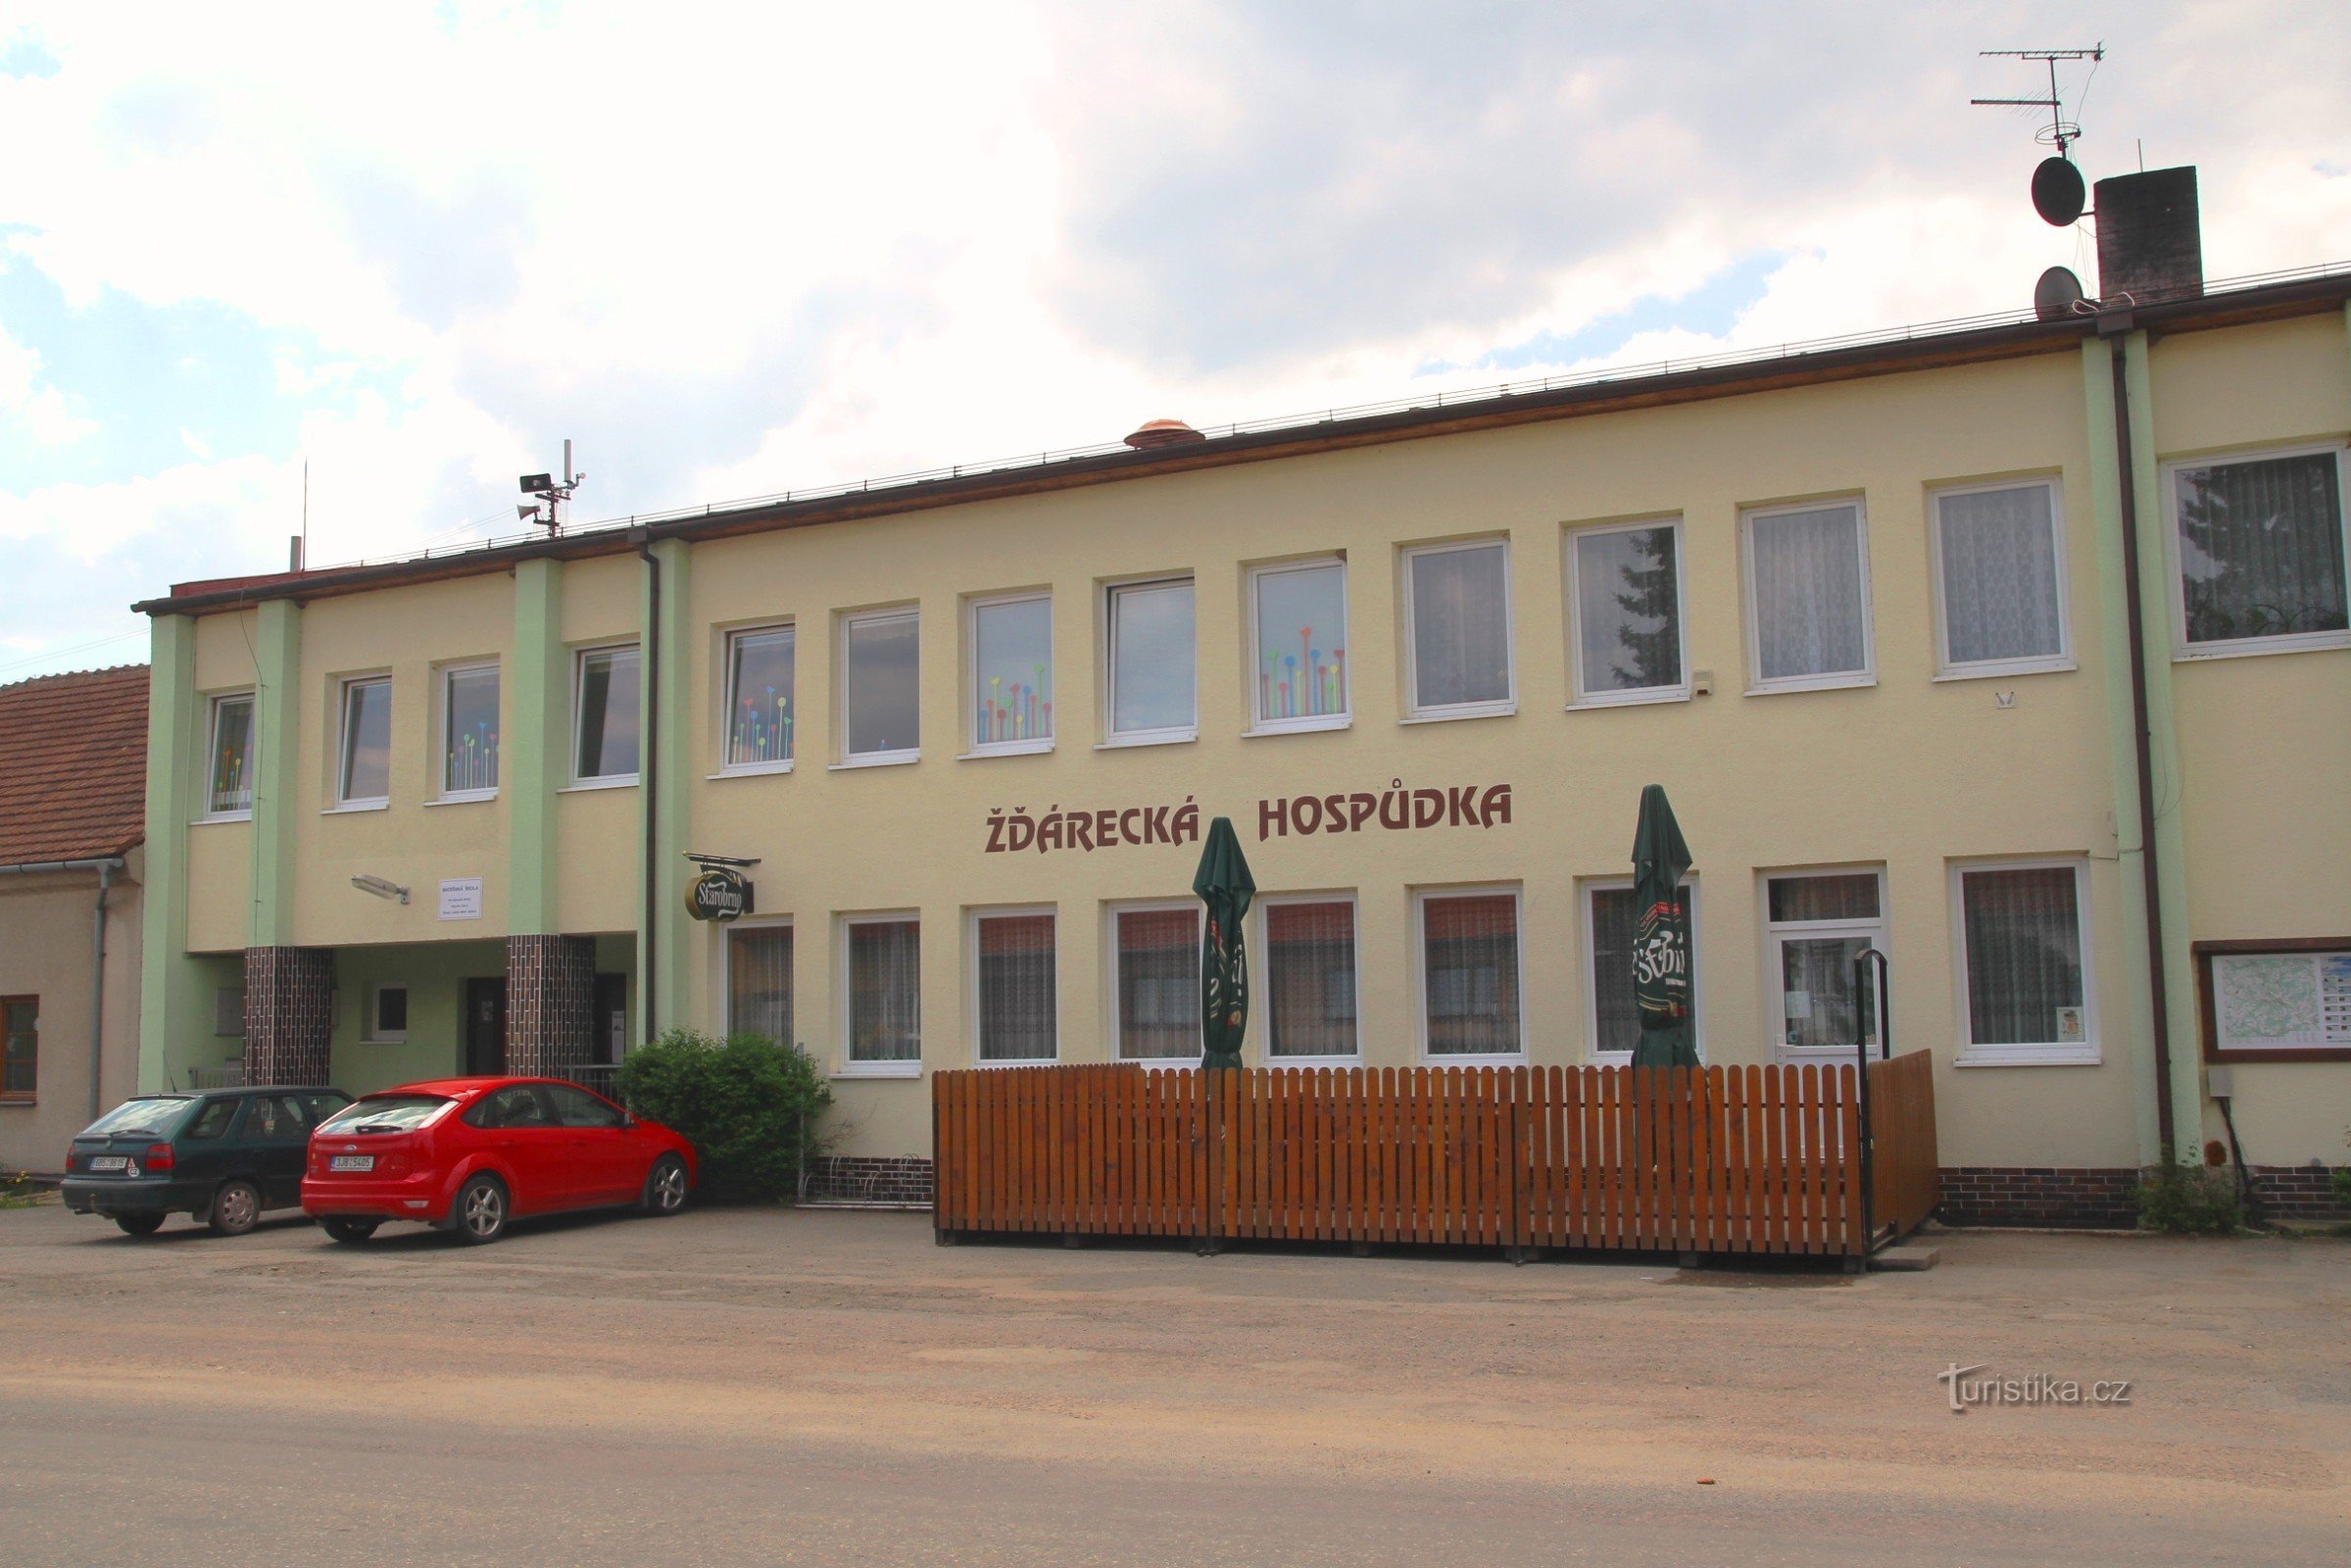 Le pub Žďárecká est situé près de l'arrêt de bus